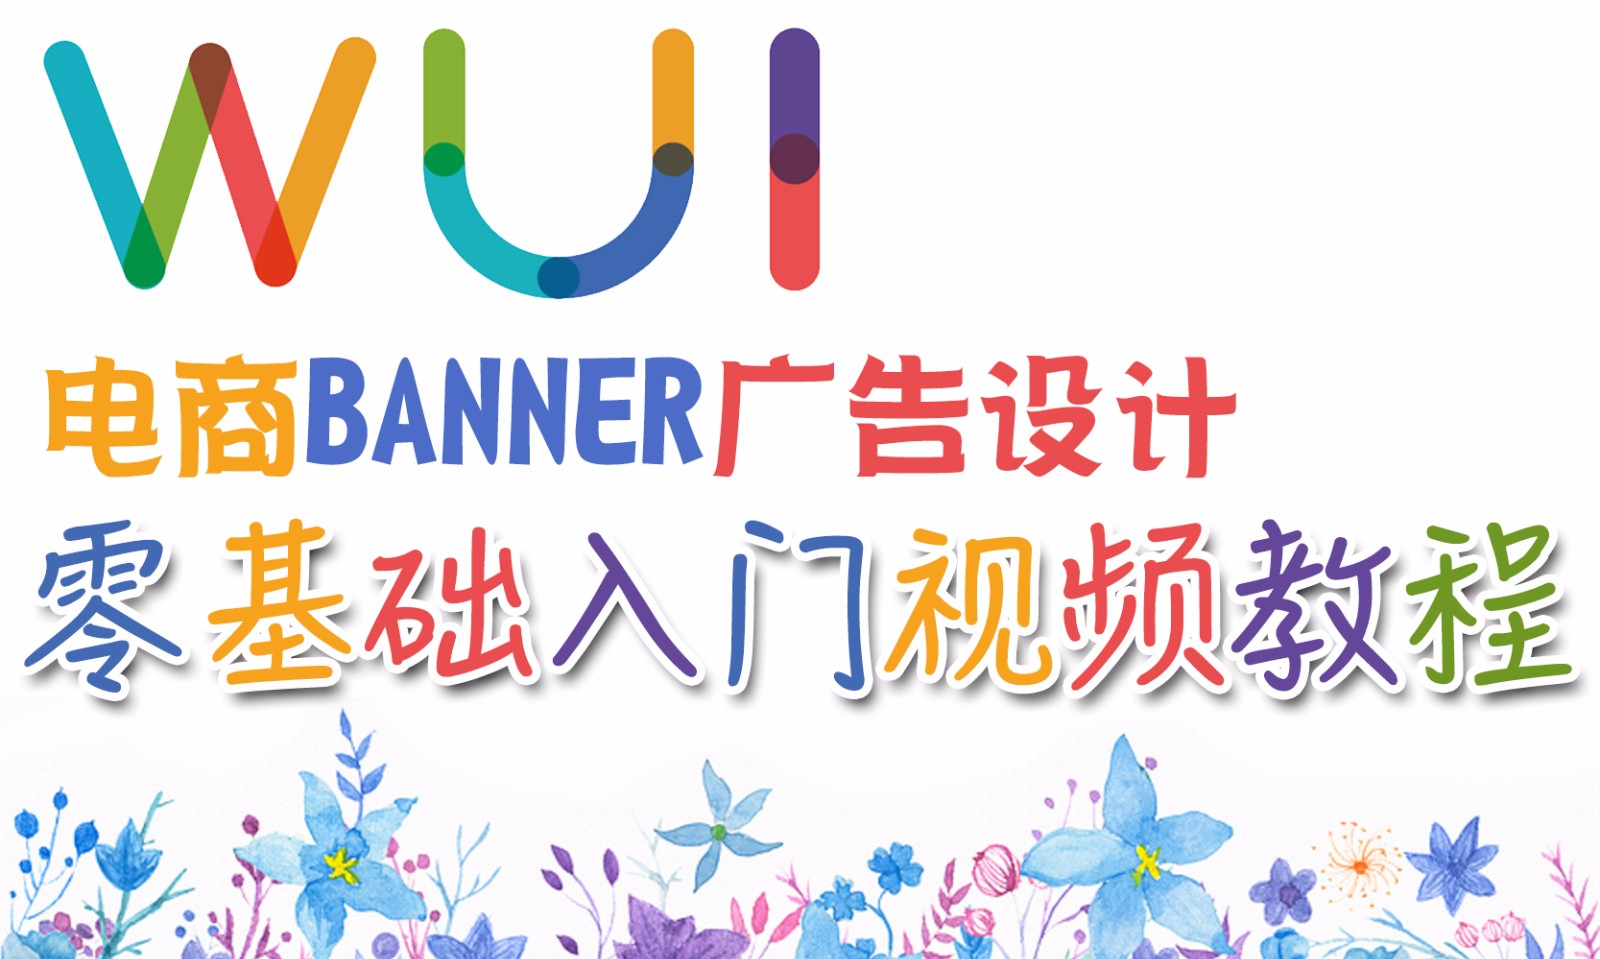 【吴刚大讲堂】电商Banner广告设计零基础入门标准视频教程